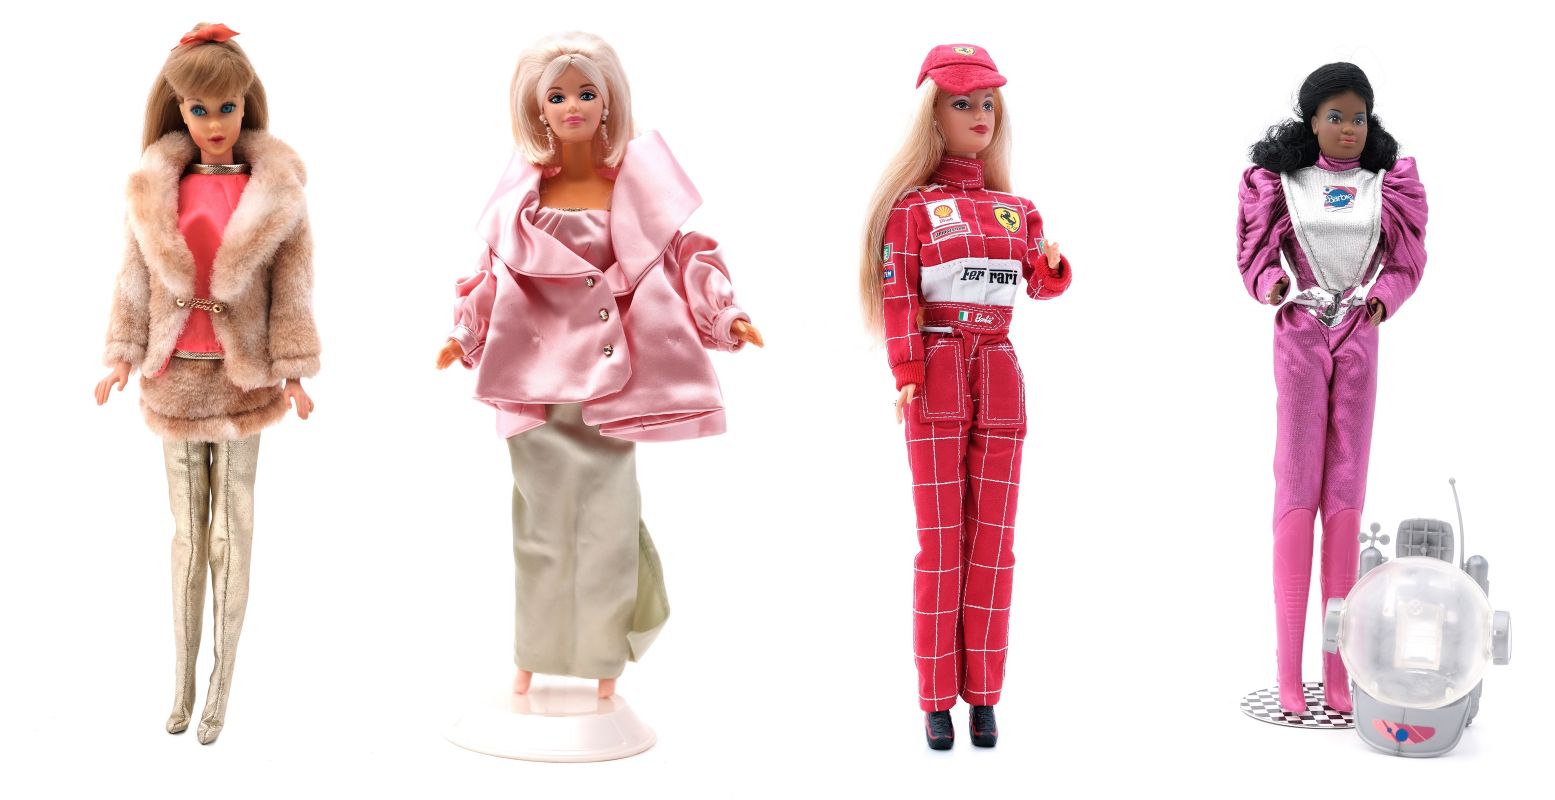 Van blond jaren 60 meisje veranderde Barbie in een stoere chick met al even stoere jobs en meerdere nationaliteiten. Al bleef het astronautenpak wel roze. Foto's: Stedelijk Museum Almelo